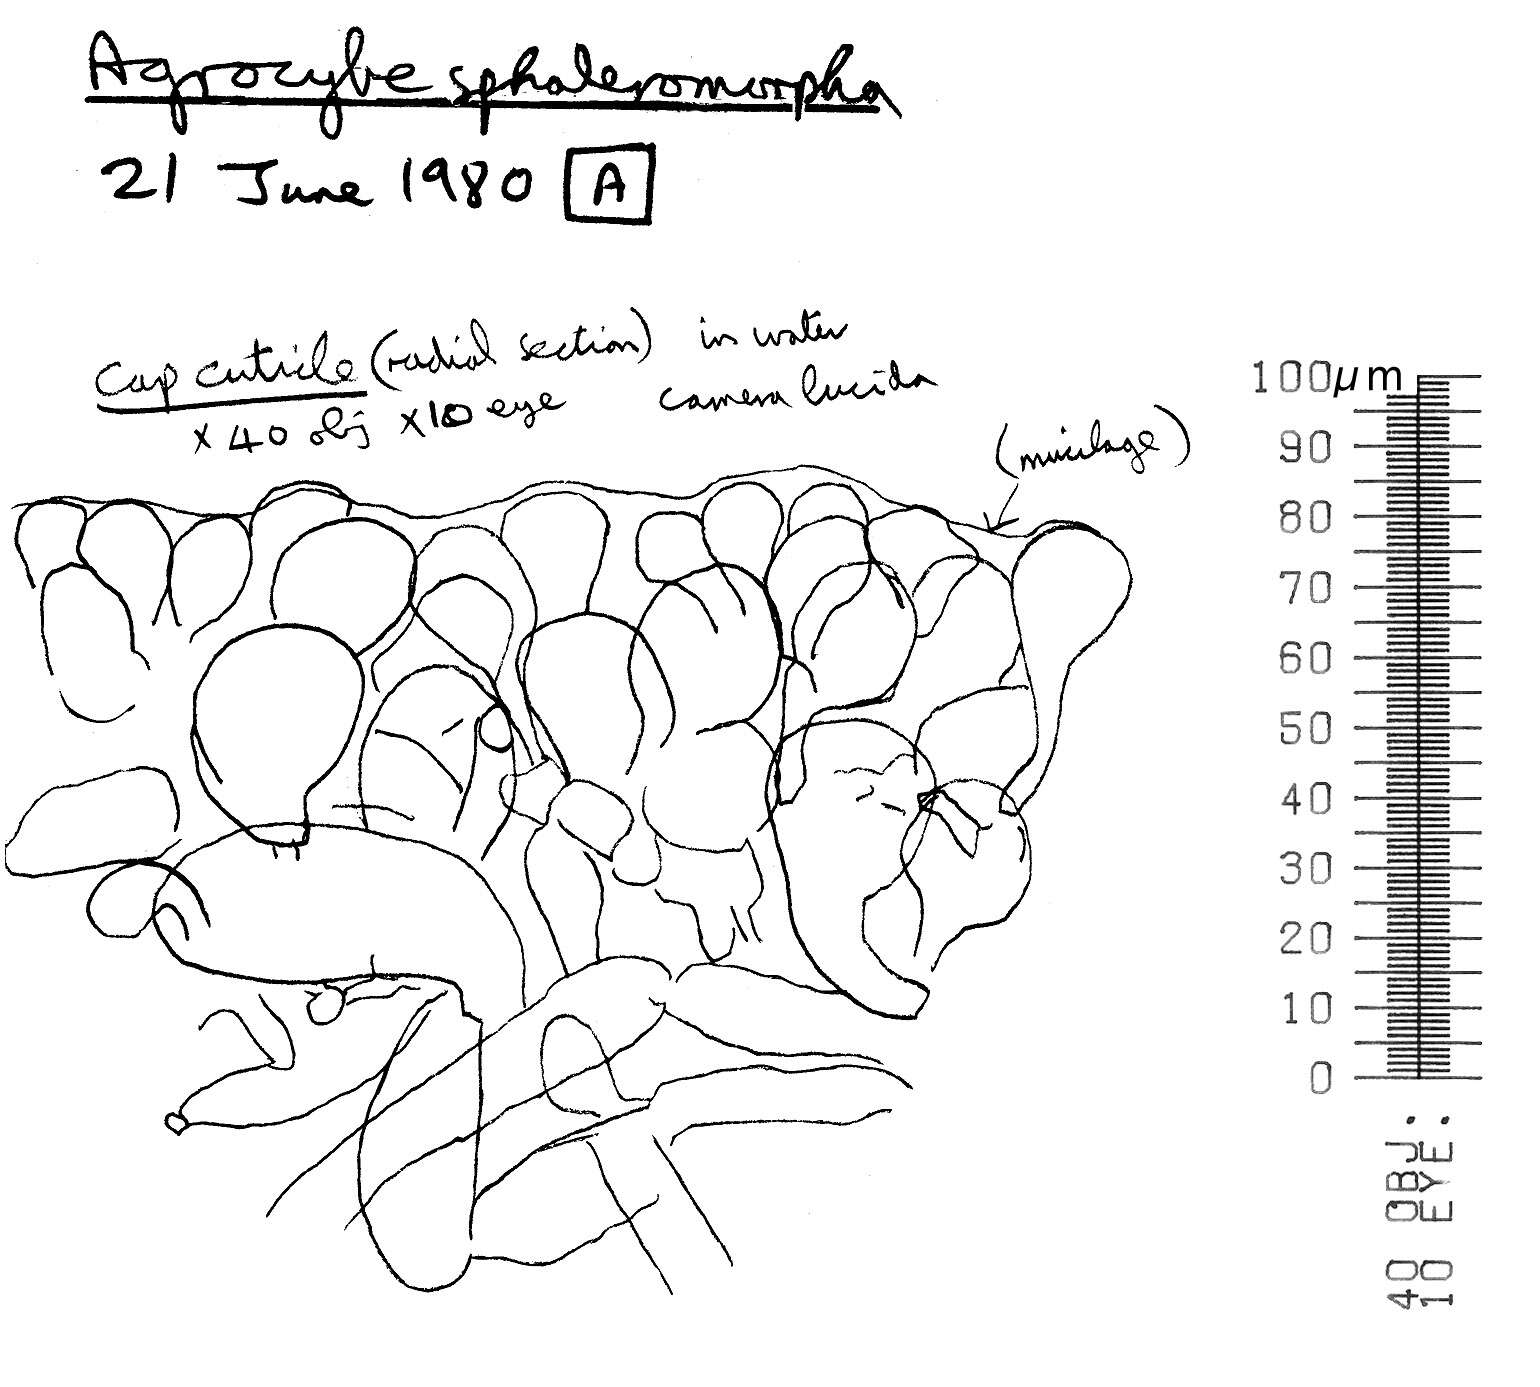 Image of Agrocybe paludosa (J. E. Lange) Kühner & Romagn. ex Bon 1987